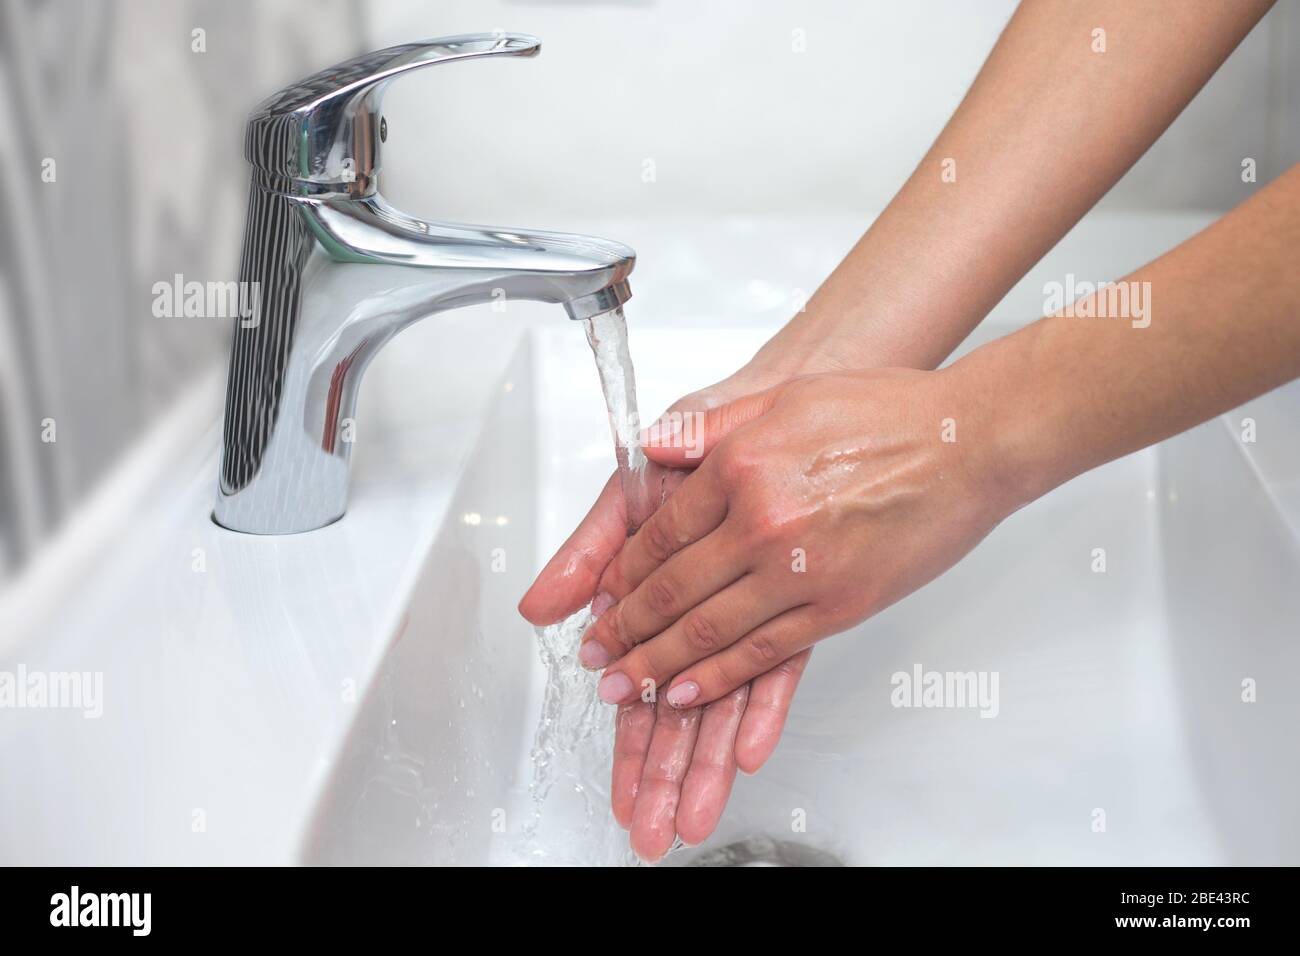 Lavage des mains. Une femme utilise du savon et se lave les mains sous le robinet. Concept d'hygiène. Gros plan Banque D'Images